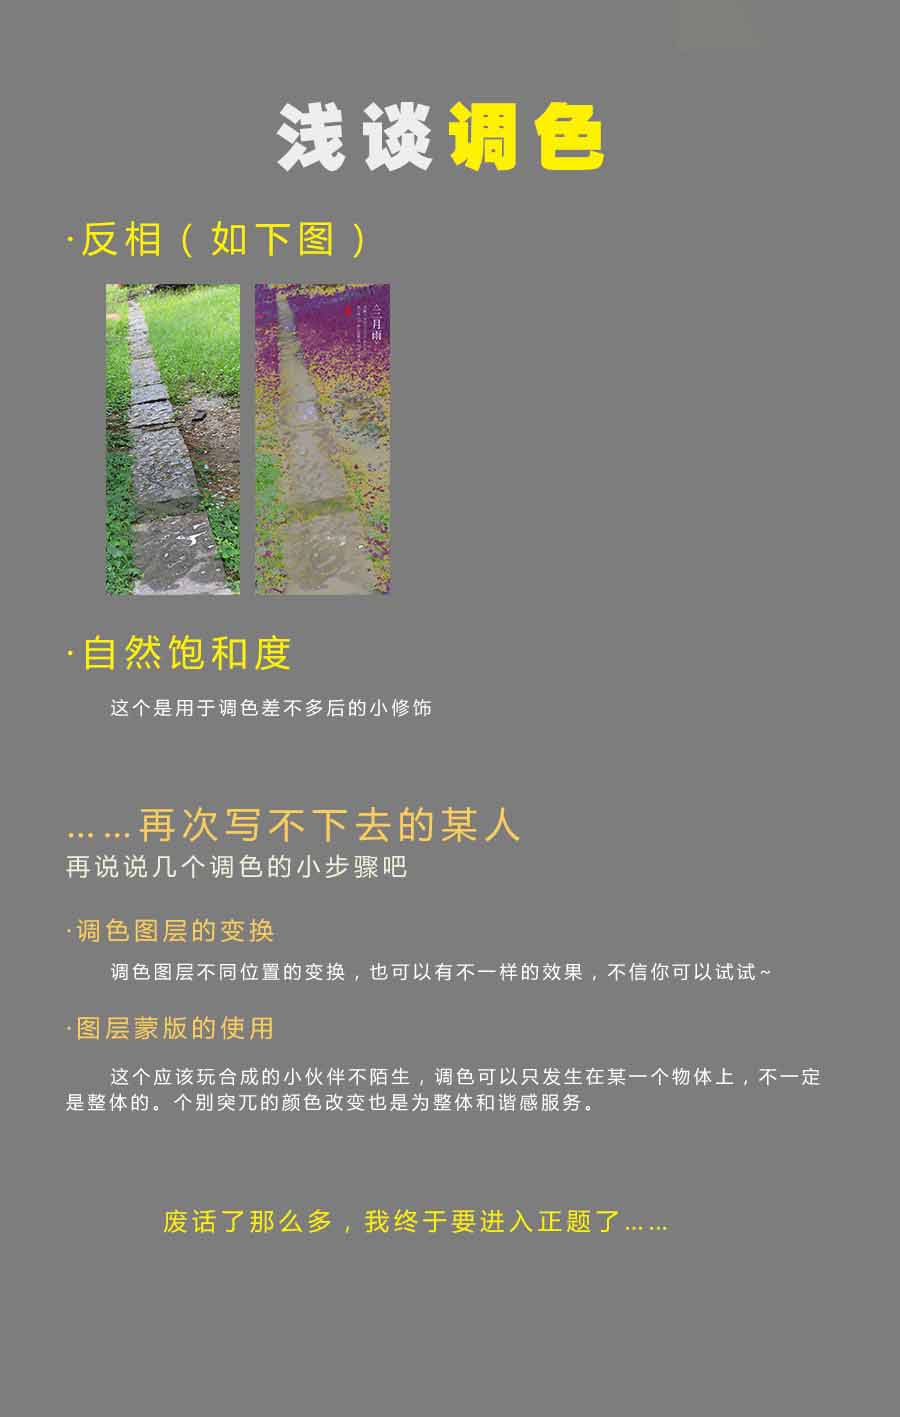 Photoshop调出中国风淡雅意境效果图,PS教程,思缘教程网